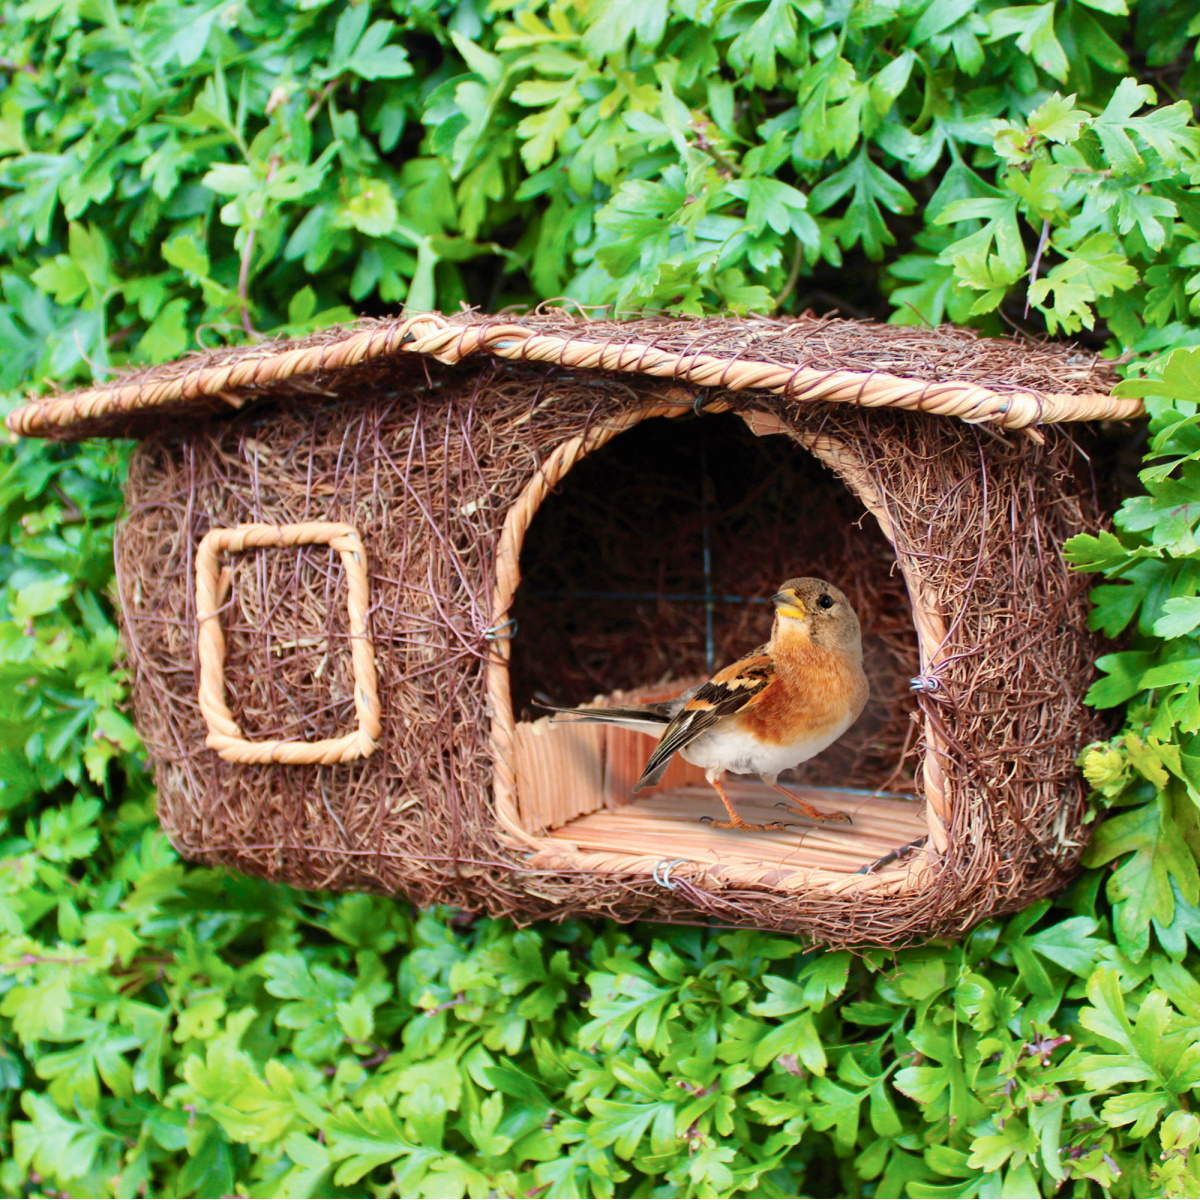 Wildlife World nest box hut in wicker